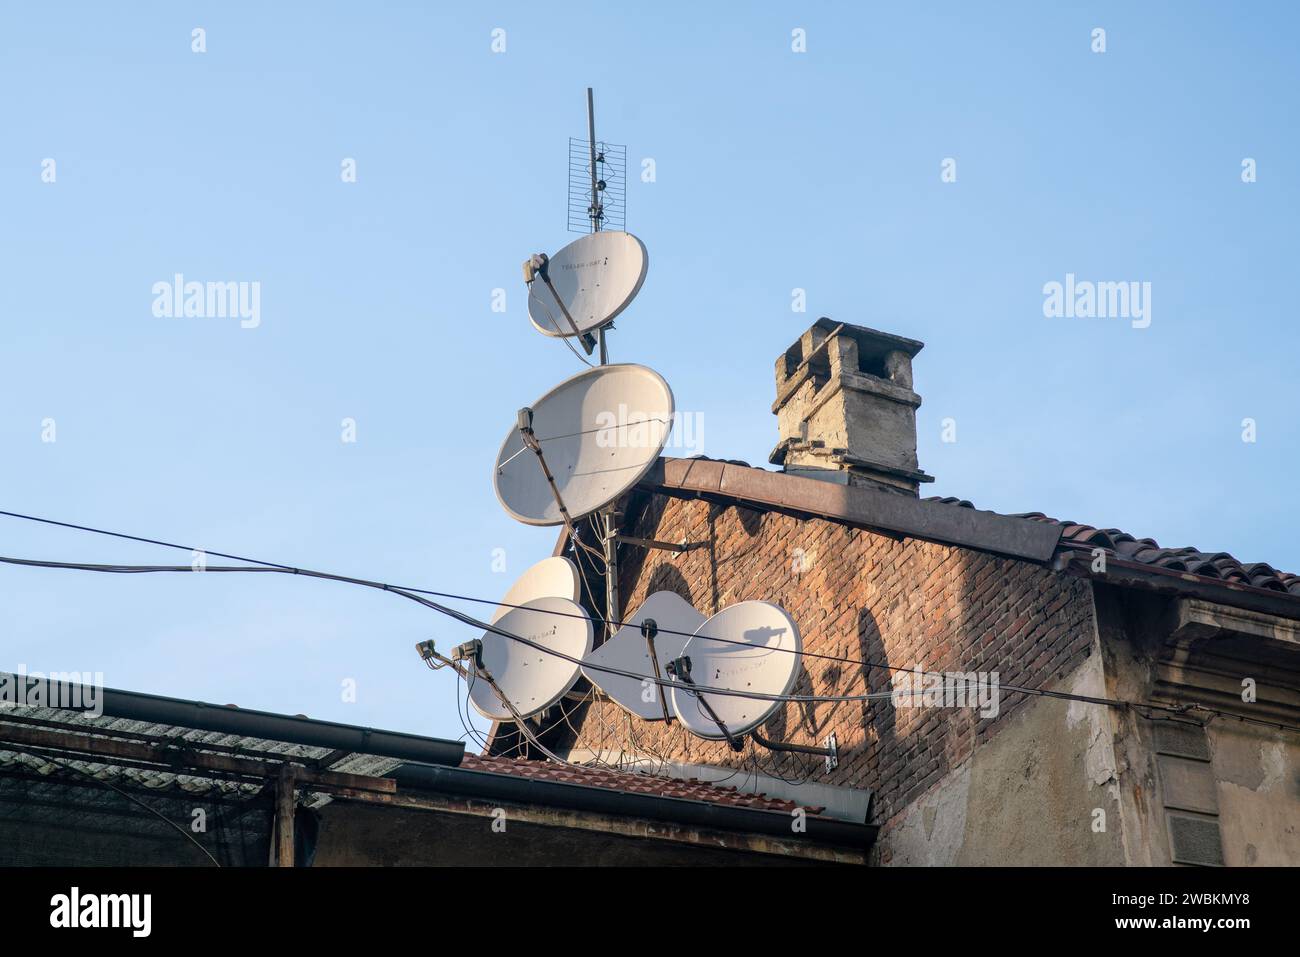 Satellitenschüsseln auf den Dächern, immer schnellere Kommunikation und Pay-TV ohne Werbung Stockfoto